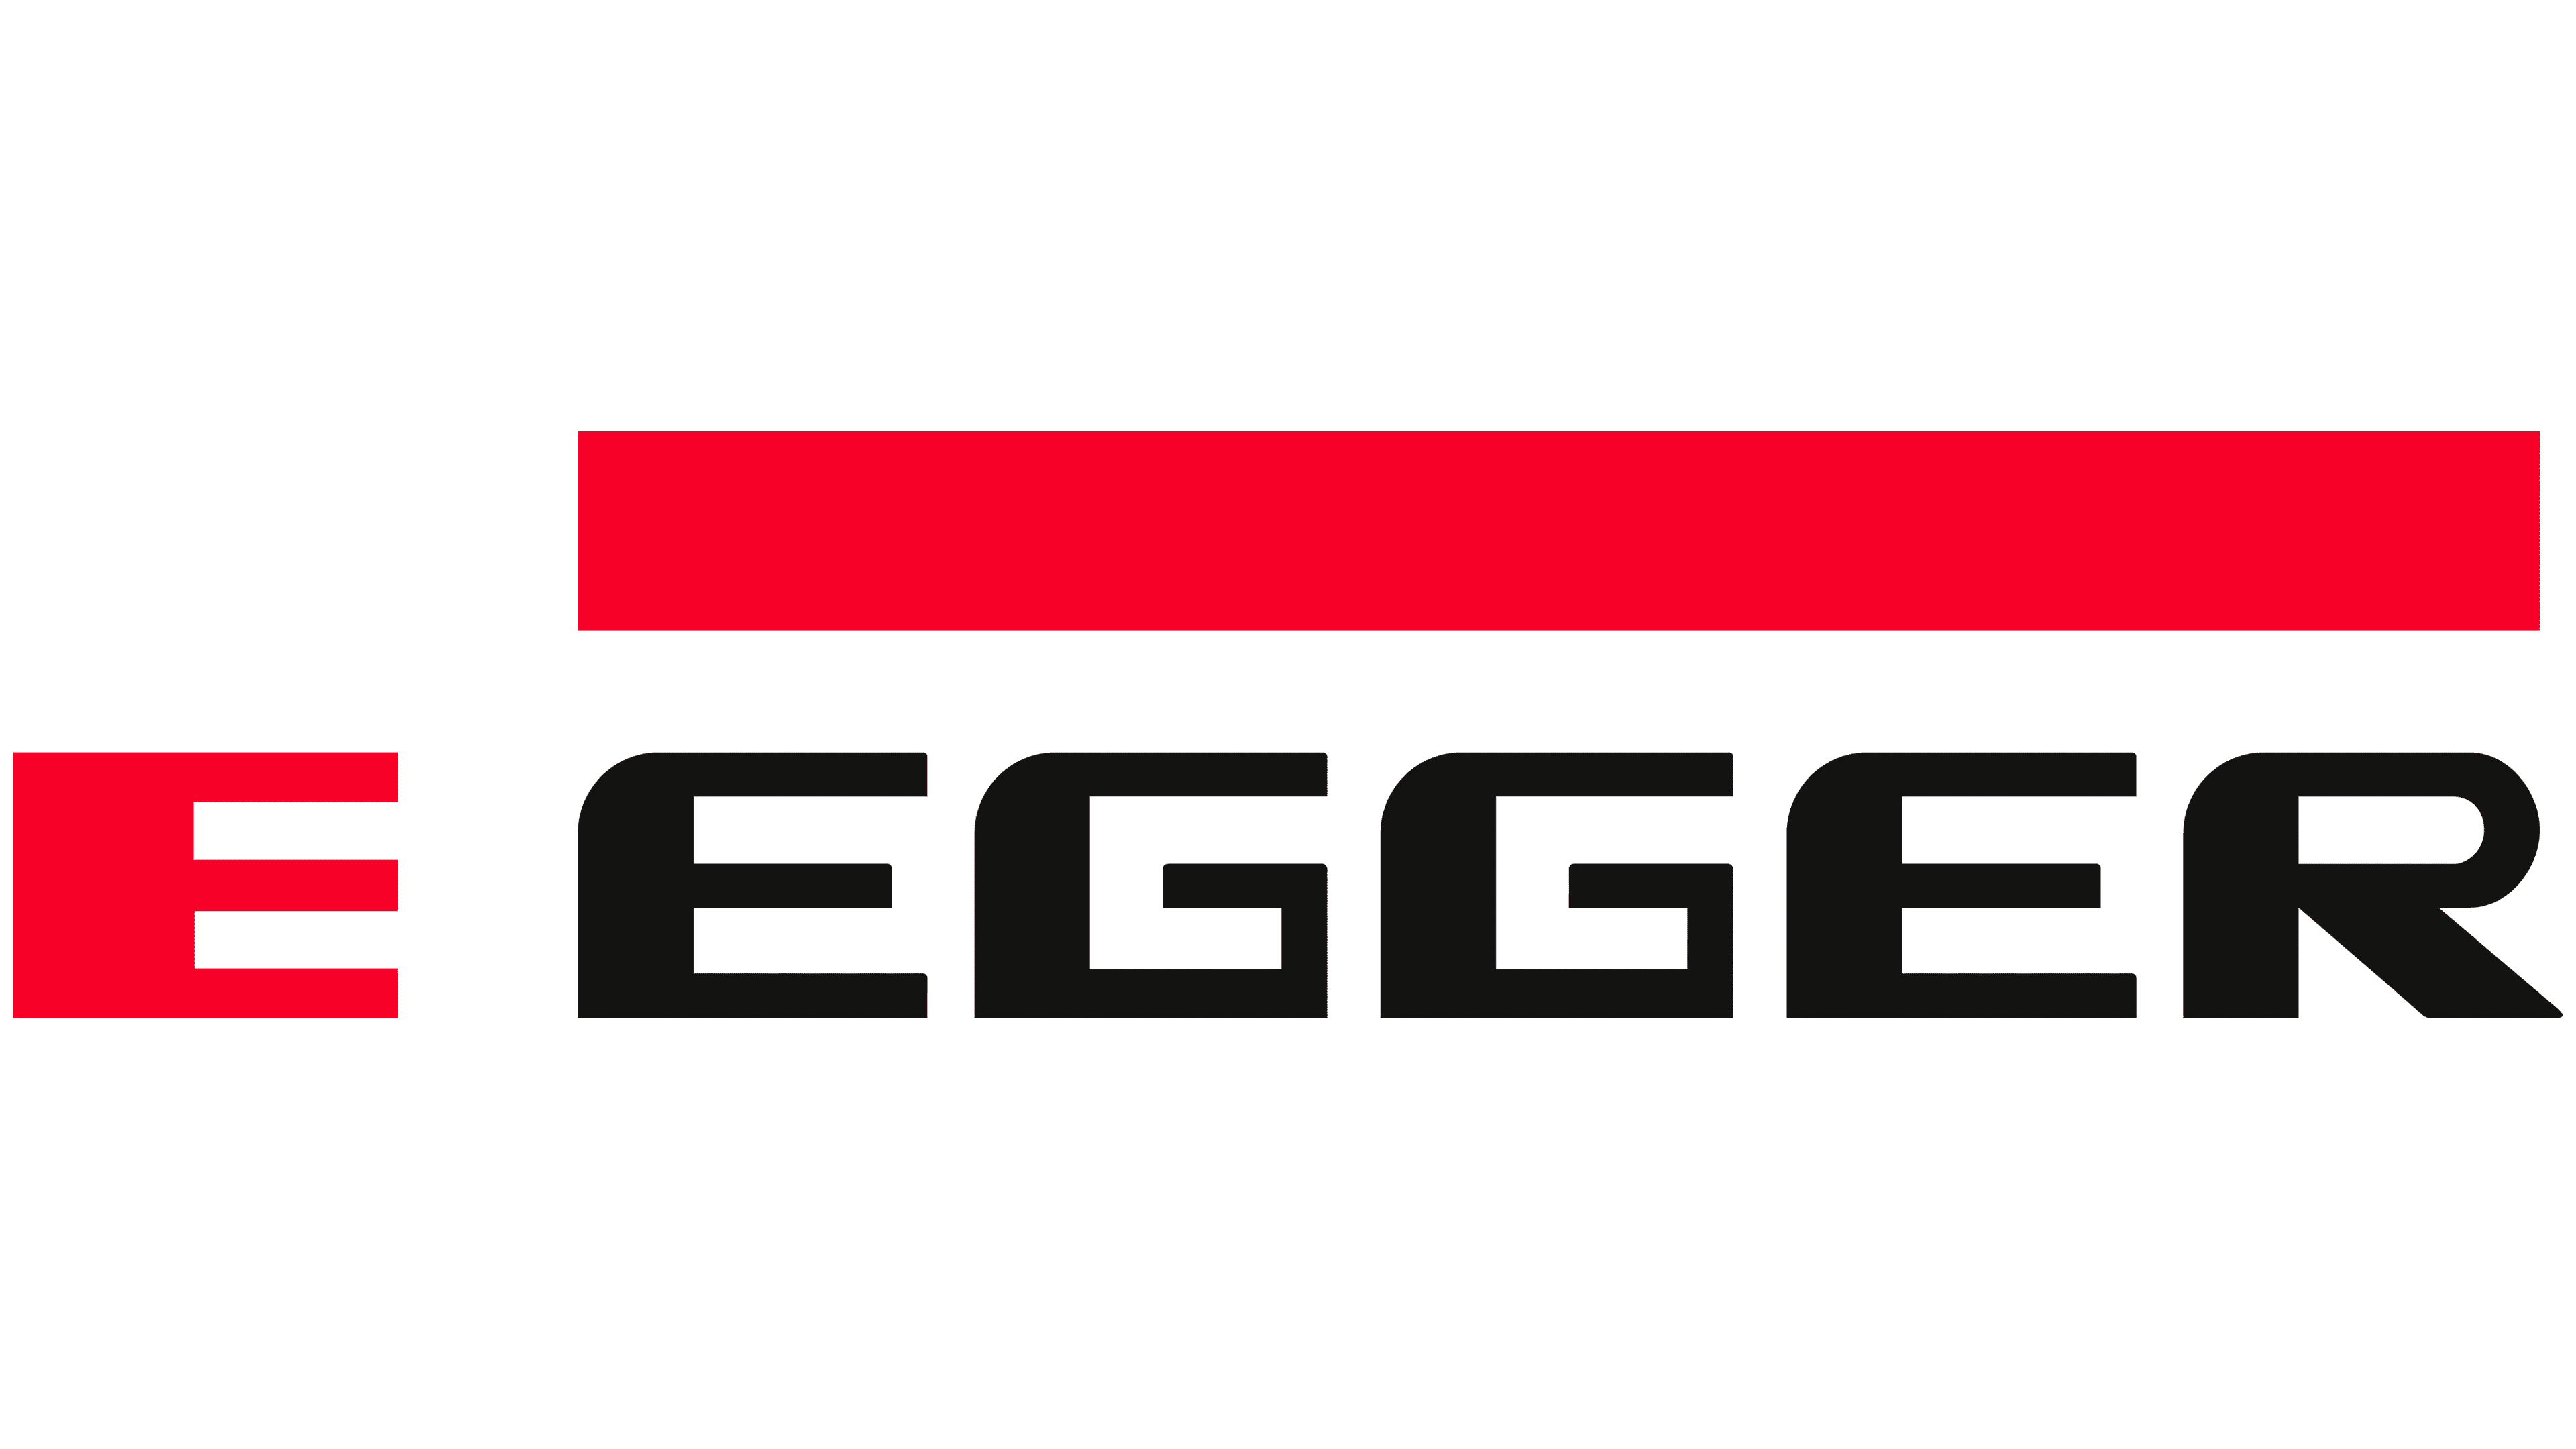 Egger-Logo